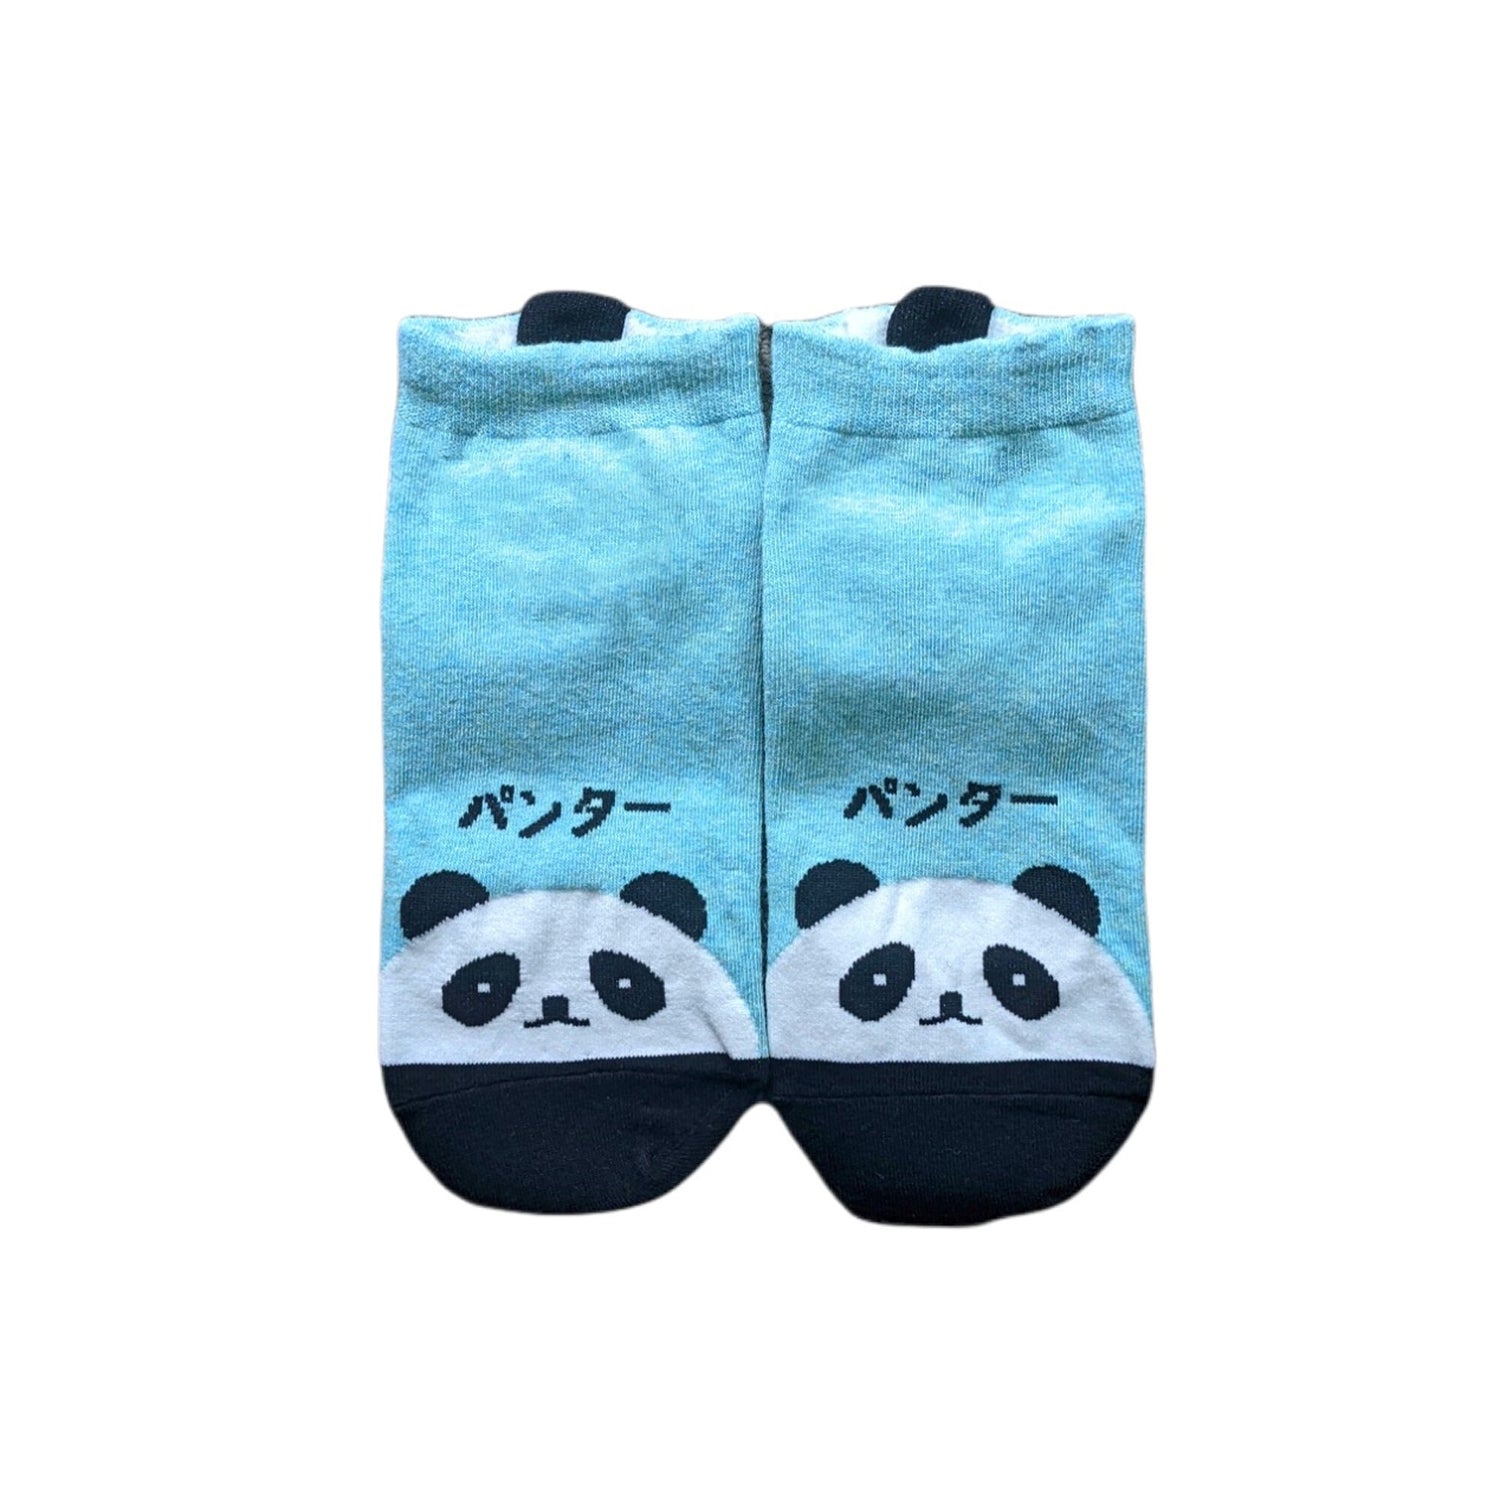 Japanese Words Pet Friends Women socks | Pink Socks | Dog Socks | Womens Socks | Happy Socks | Colorful Socks | Cotton Socks